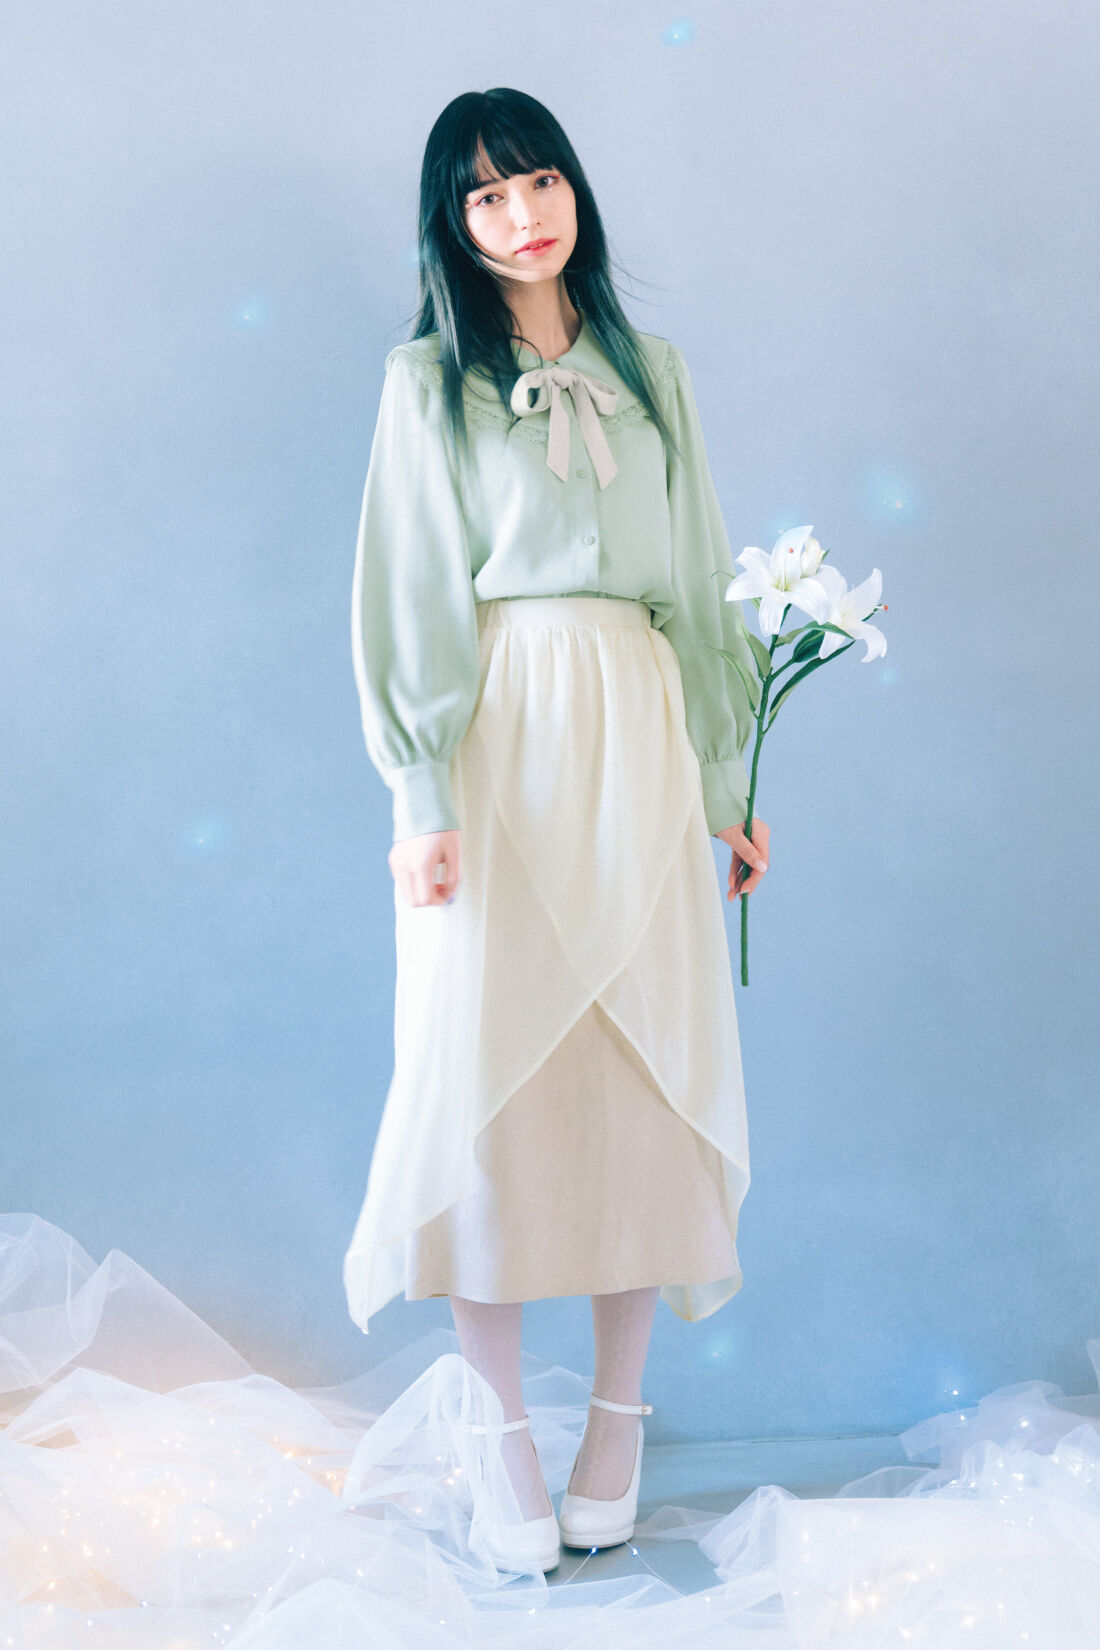 魔法部|魔法部×ミヤマアユミ　妖精のクチュール　おとぎ話の主人公みたいな葉のブラウス〈グリーン〉|同シリーズのスカートとセットで着ると、 まるでおとぎ話の 主人公みたい。